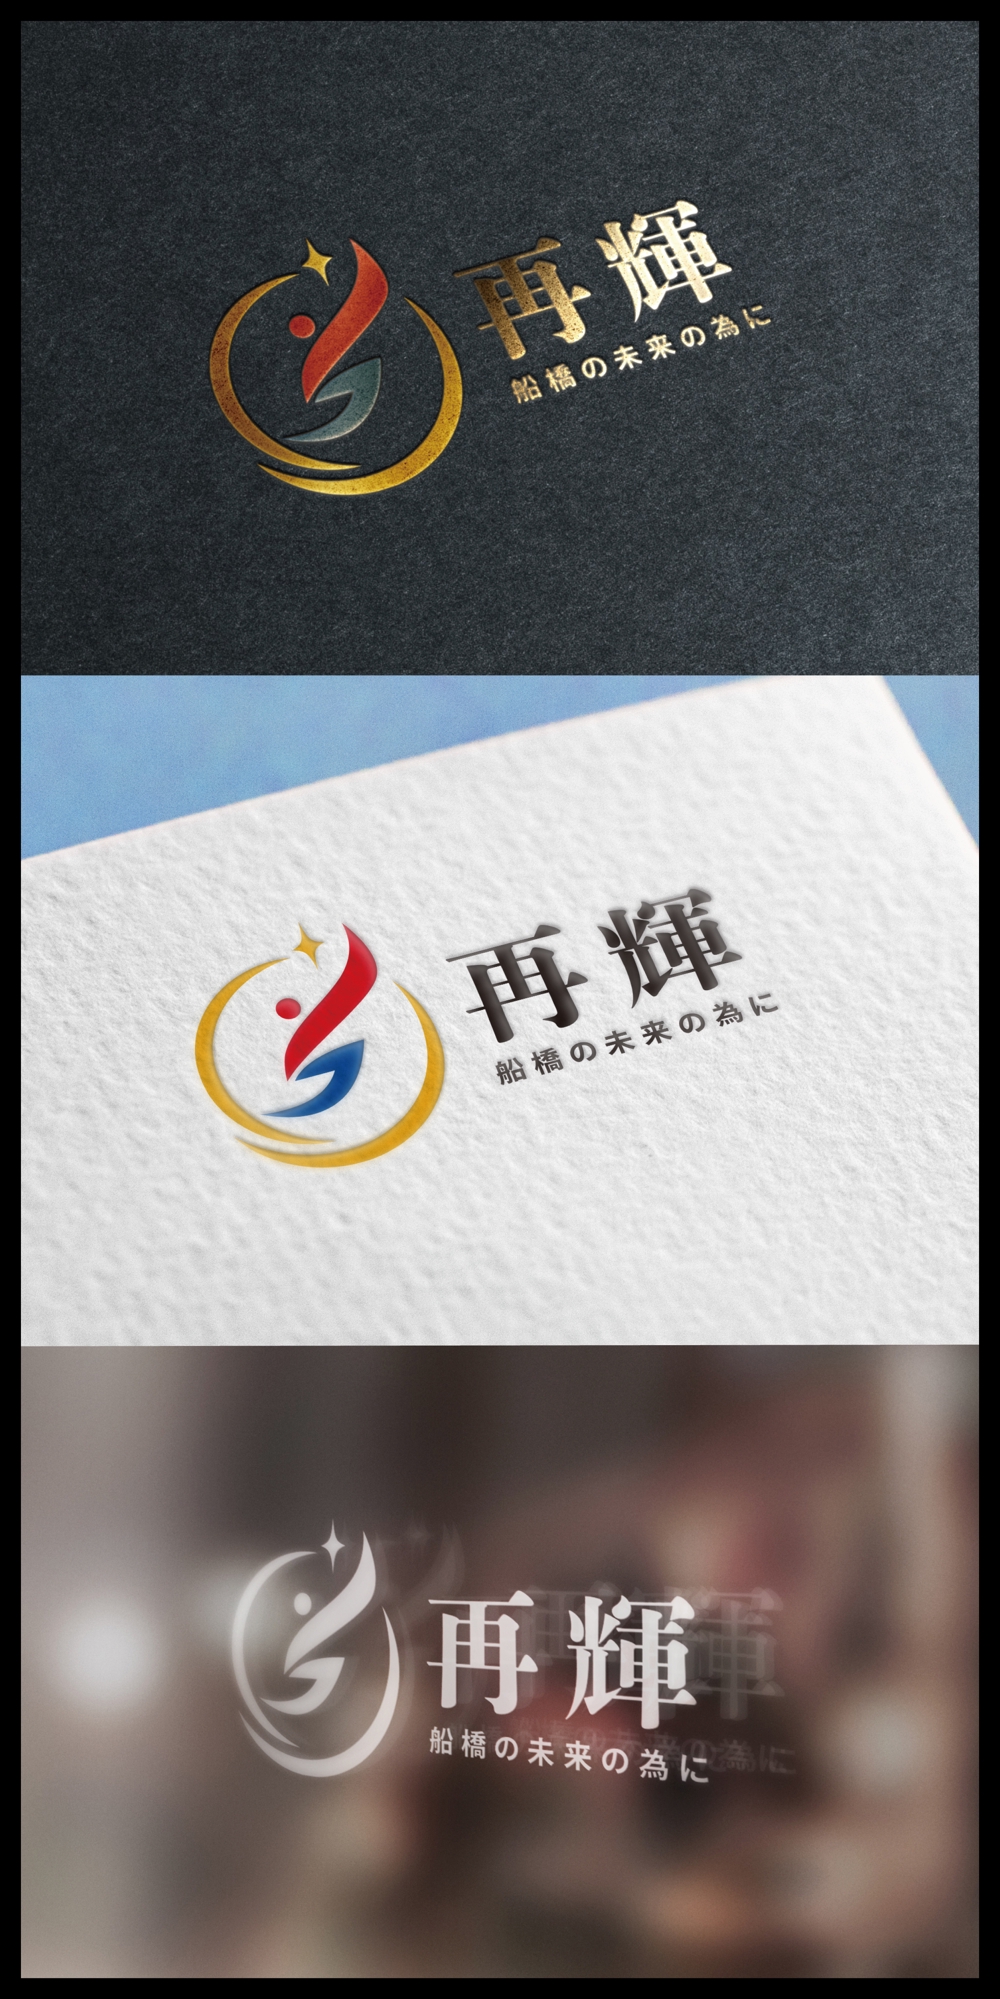 再輝_logo01_01.jpg